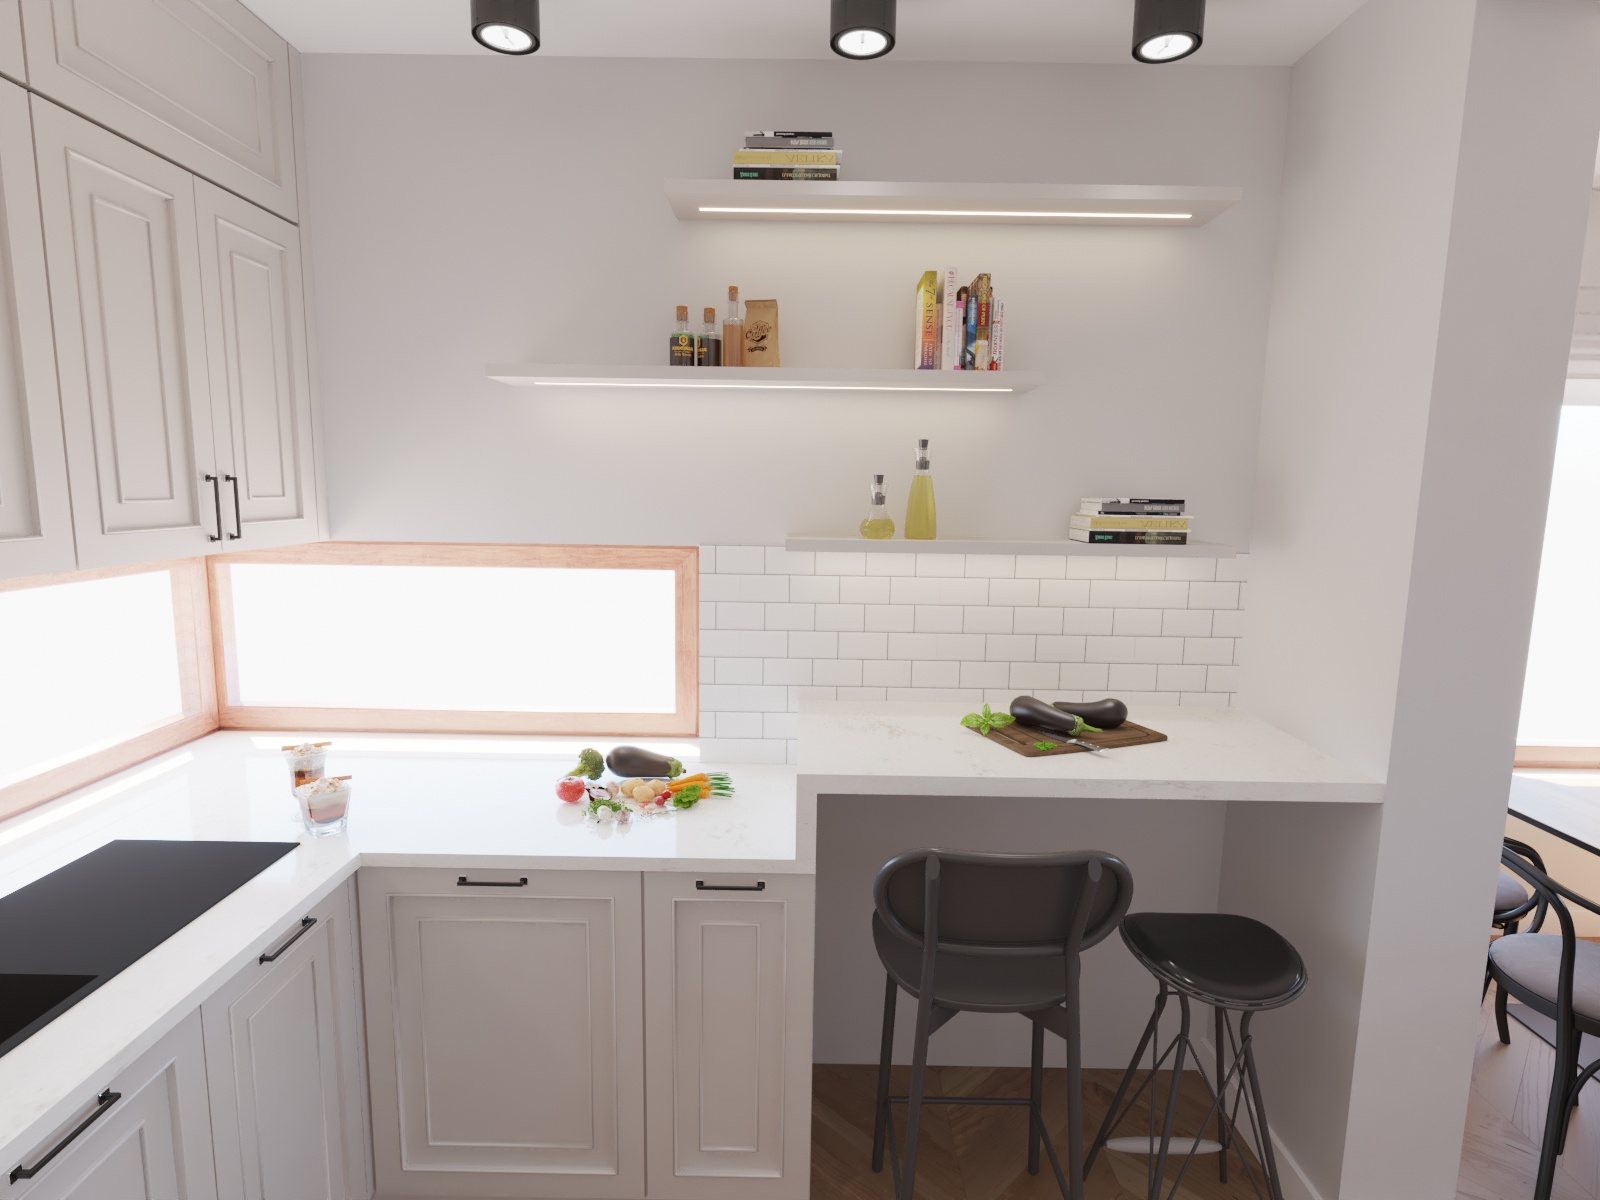 Aranżacja kuchni w stylu eklektycznym z białą stylizowaną zabudową szafek i niewielkim oknem. Półki na ścianie podświetlane taśmą LED